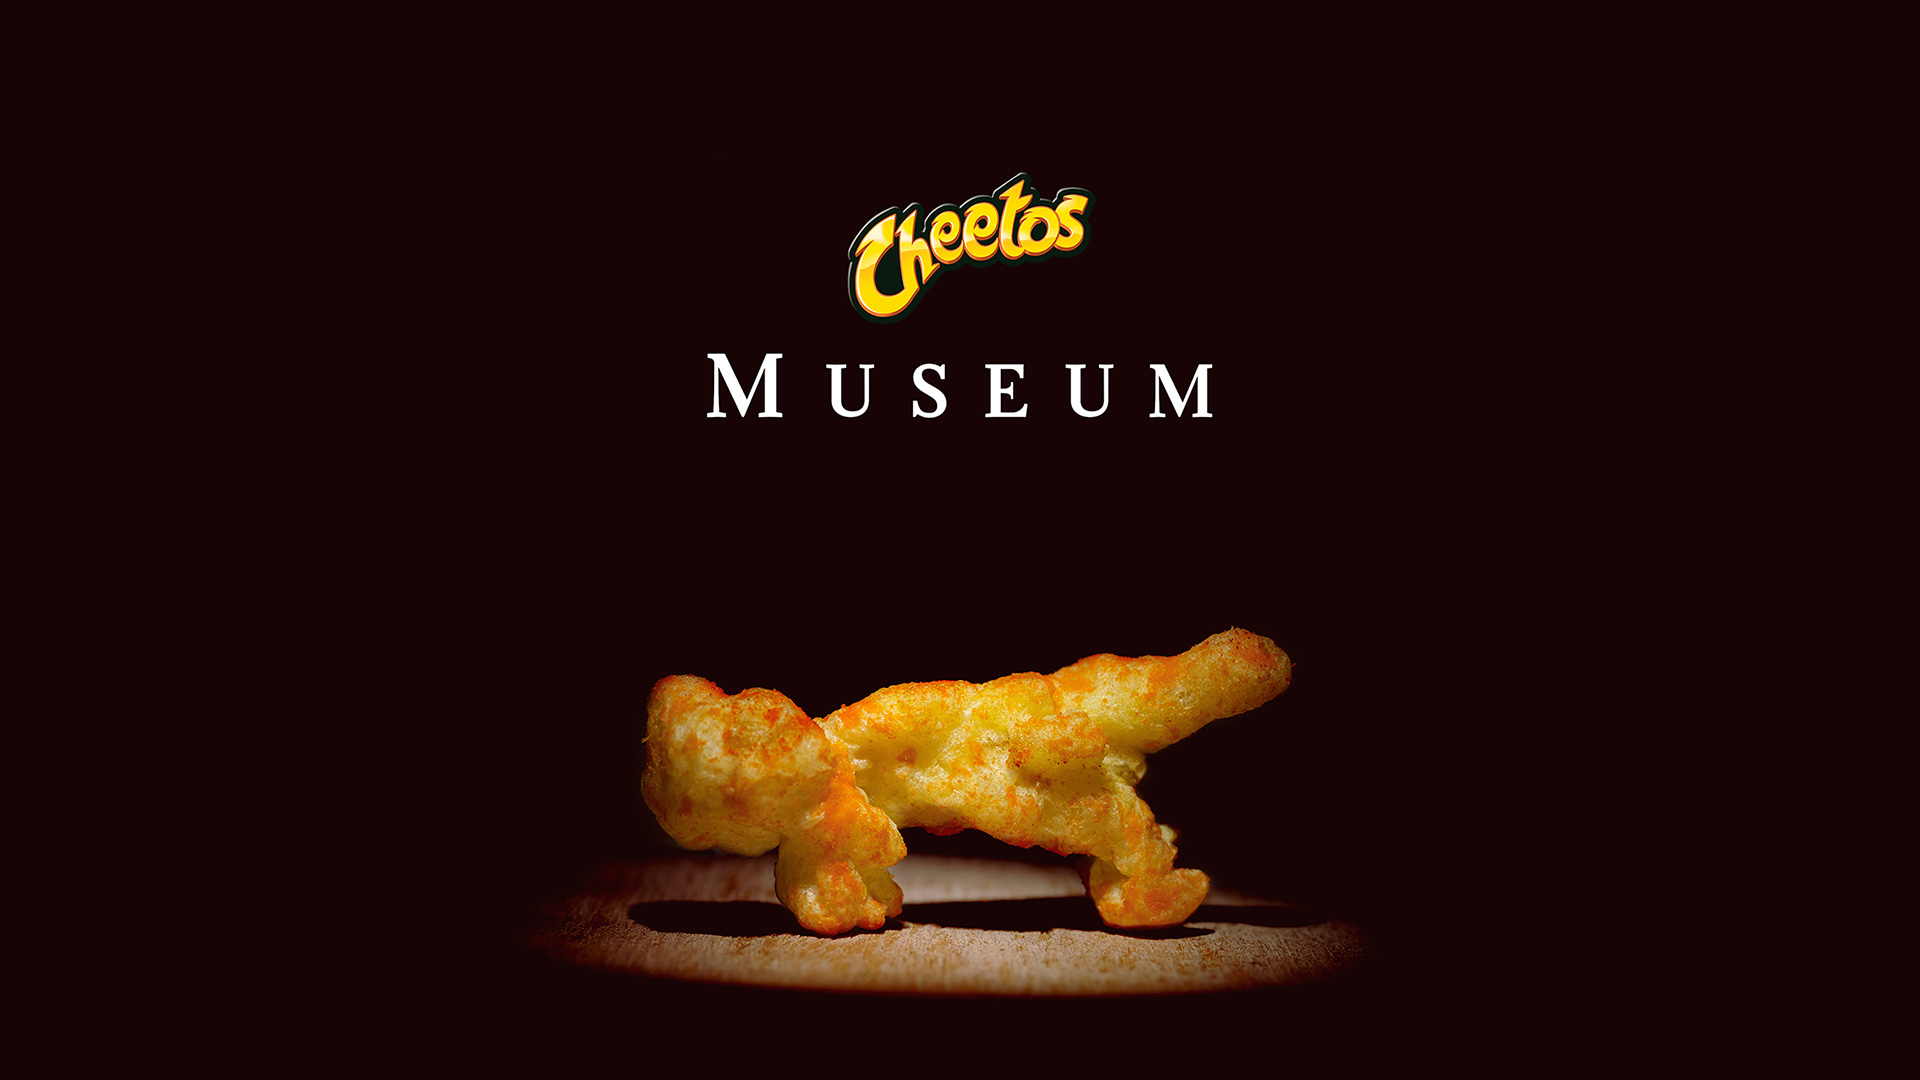 Cheetos Museum 